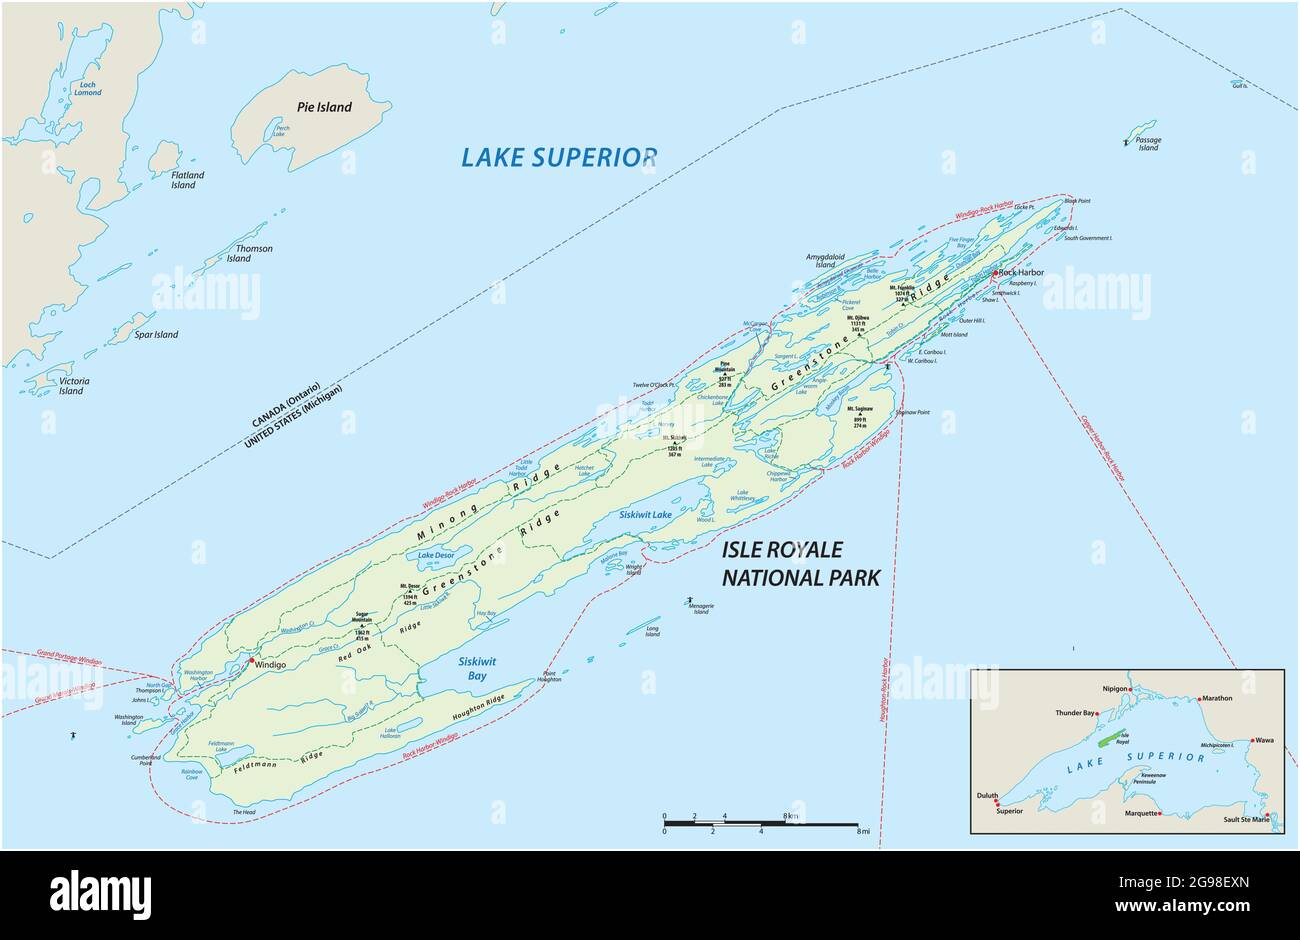 Mappa vettoriale dell'Isle Royale National Park nel lago Superior, Michigan, USA Illustrazione Vettoriale